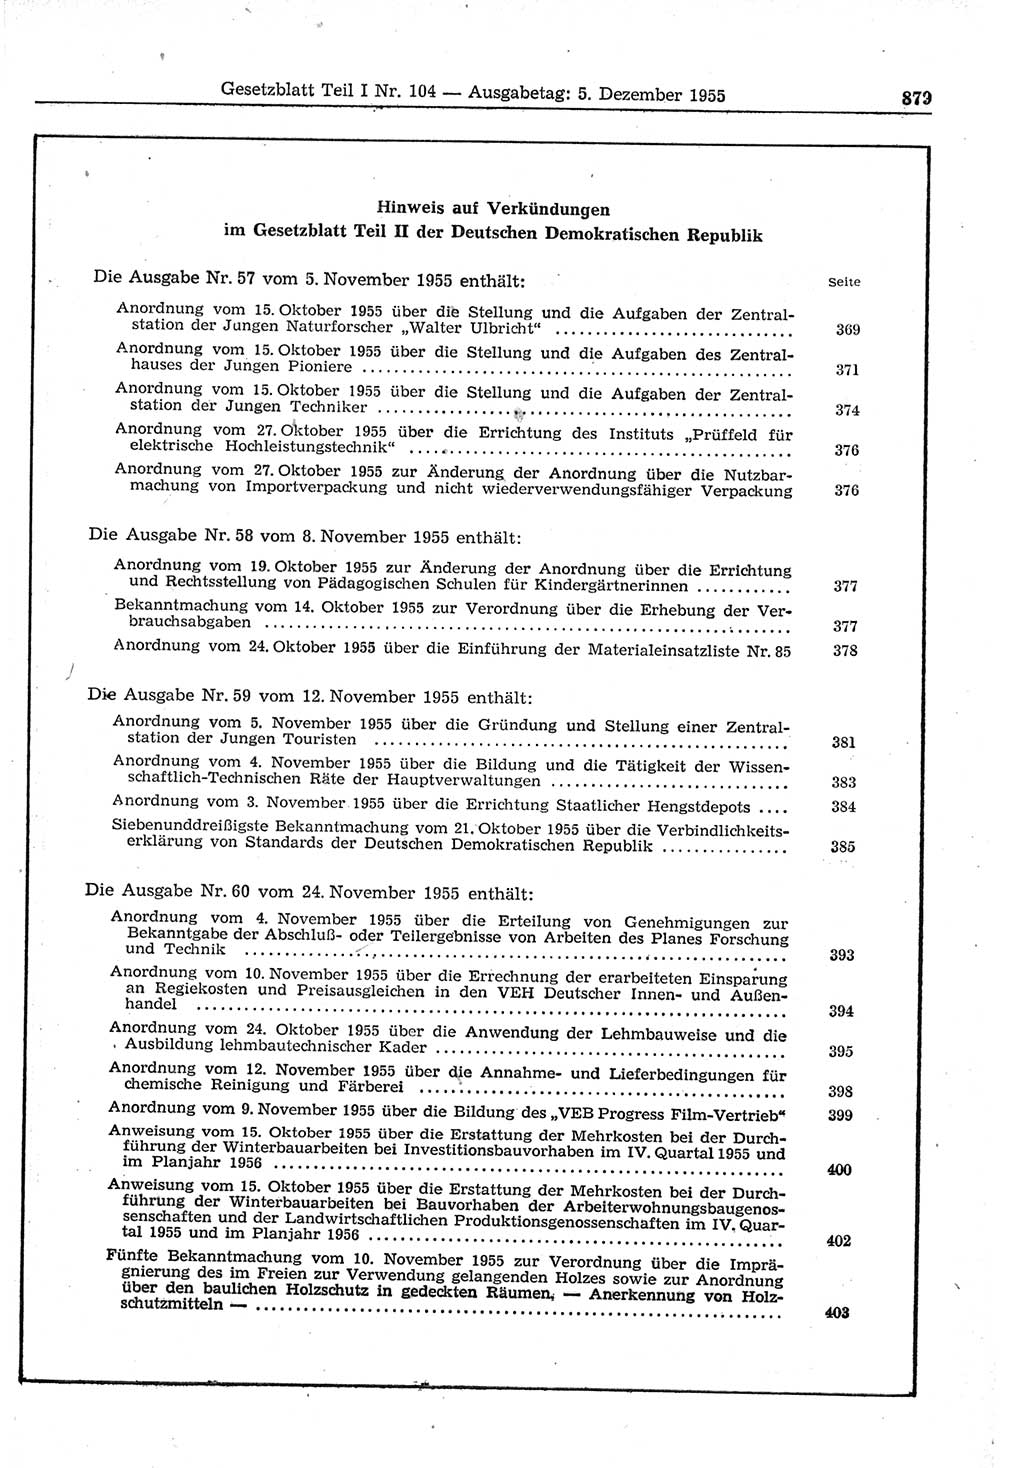 Gesetzblatt (GBl.) der Deutschen Demokratischen Republik (DDR) Teil Ⅰ 1955, Seite 879 (GBl. DDR Ⅰ 1955, S. 879)